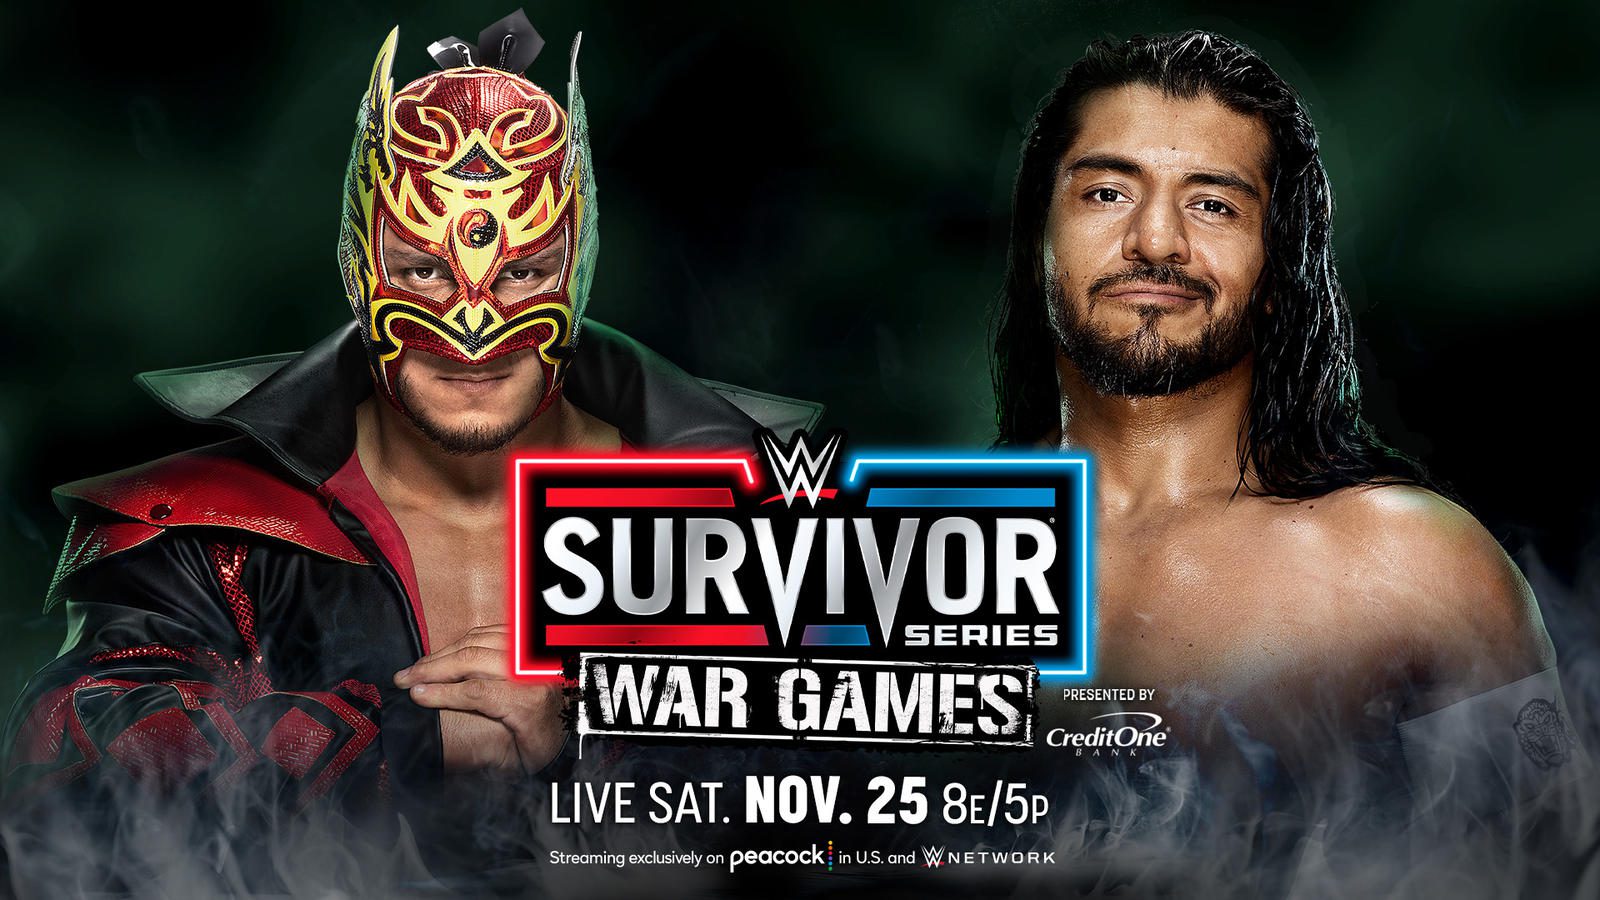 WWE Survivor Series results: Dragon Lee vs. Santos Escobar